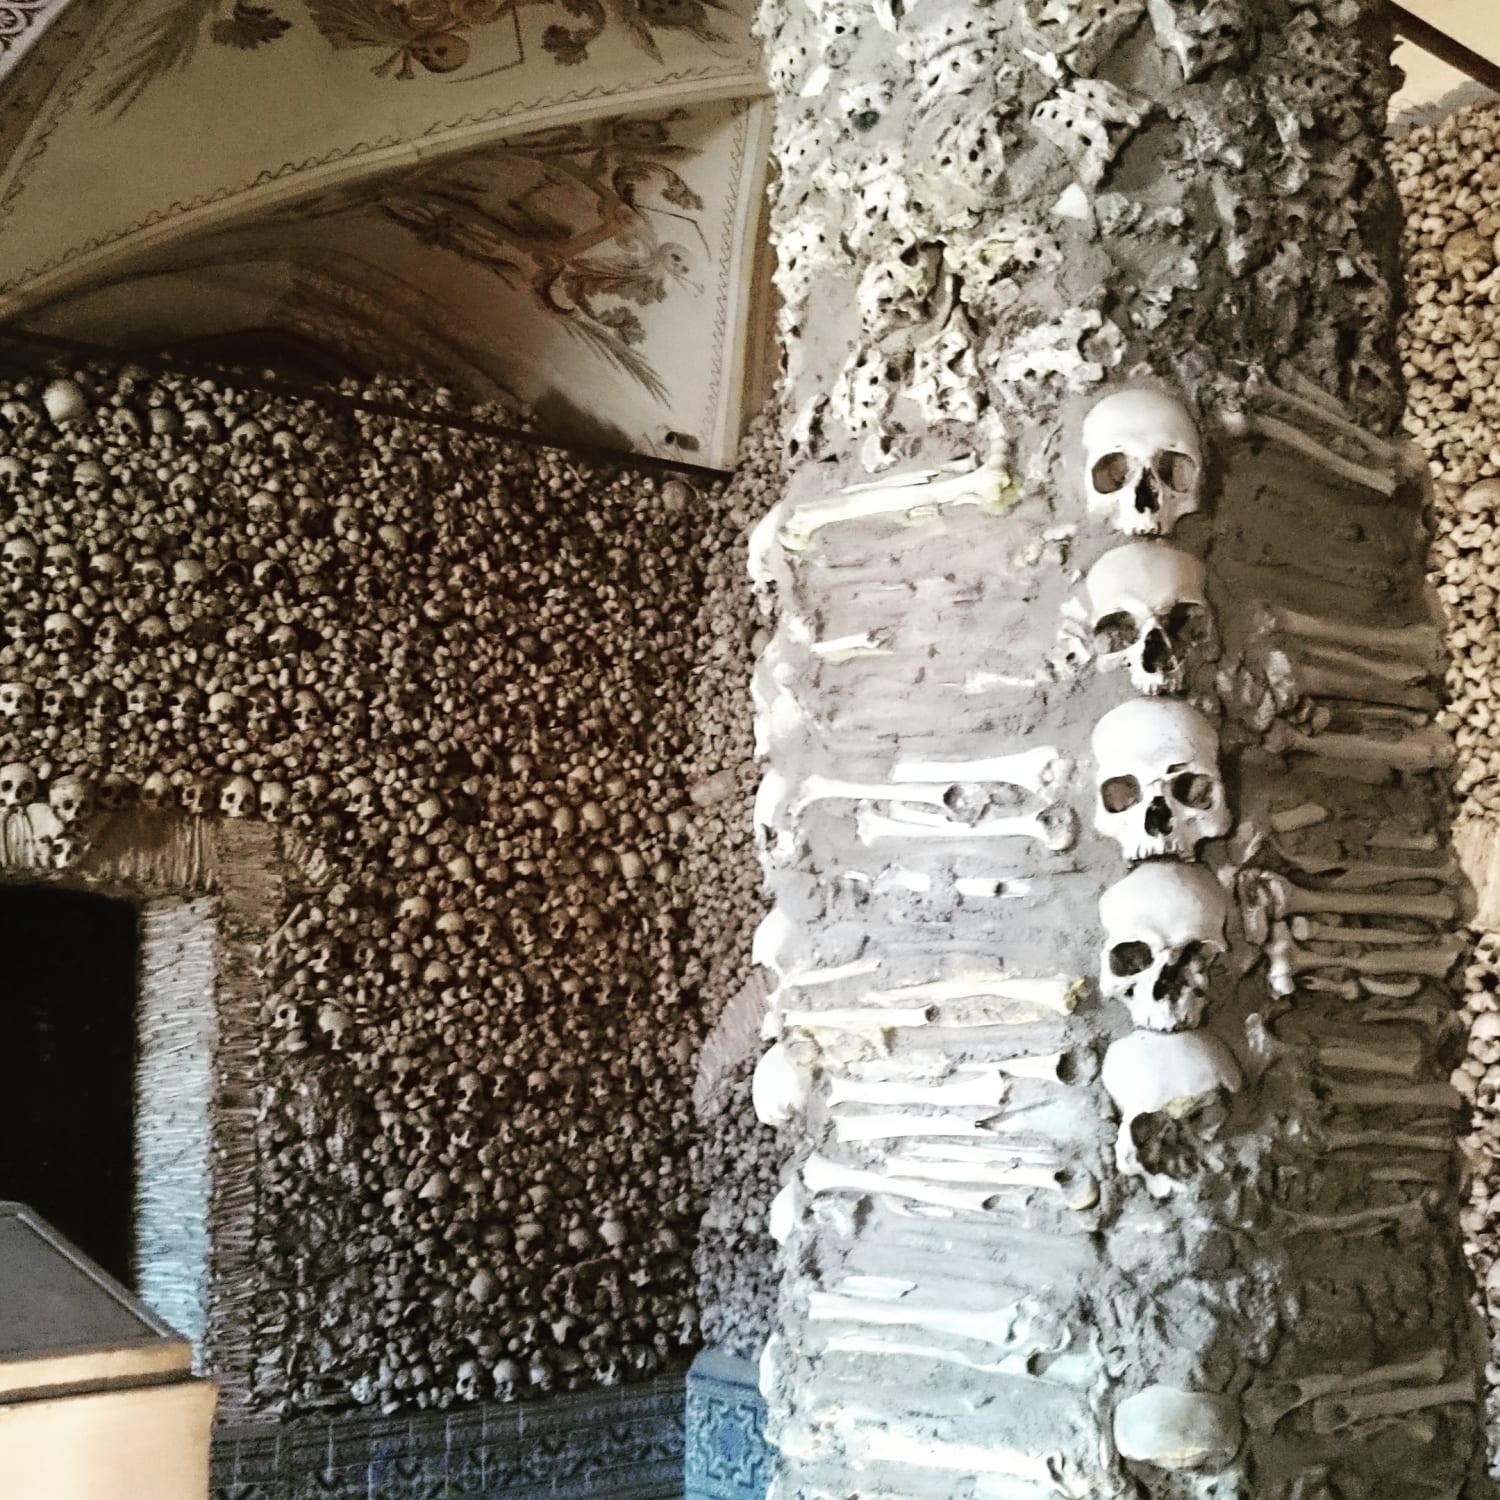 Evoria, Portugal. Chapel of bones.